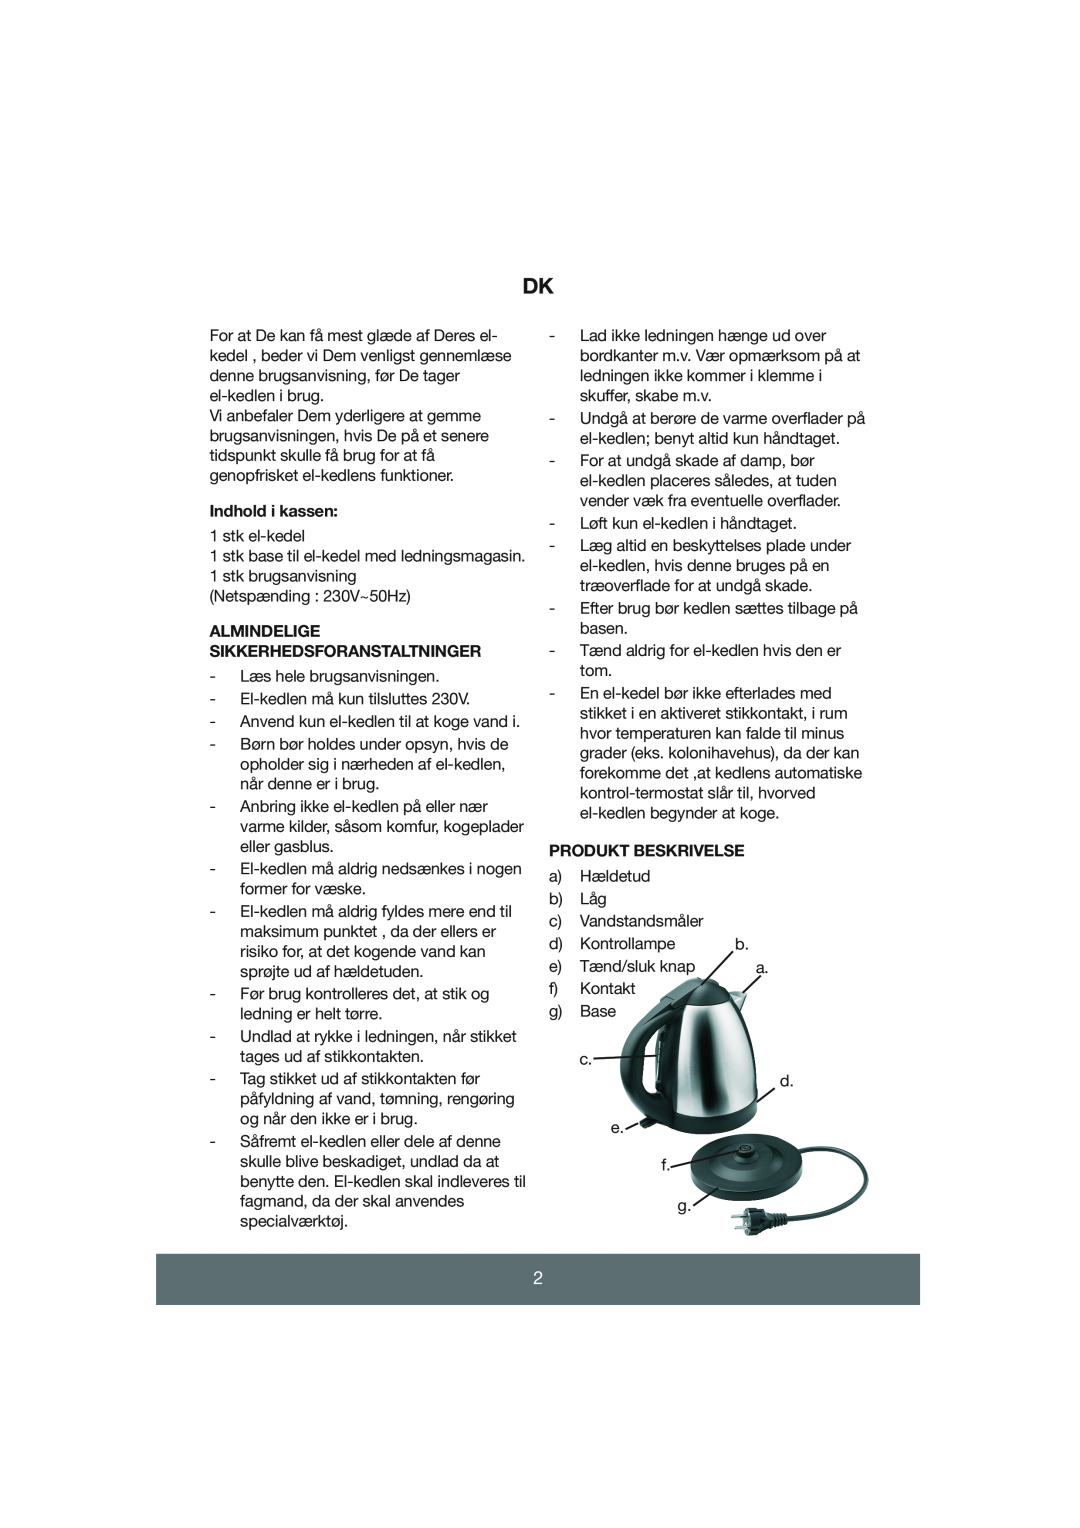 Melissa 645-055 manual Indhold i kassen, Almindelige Sikkerhedsforanstaltninger, Produkt Beskrivelse 